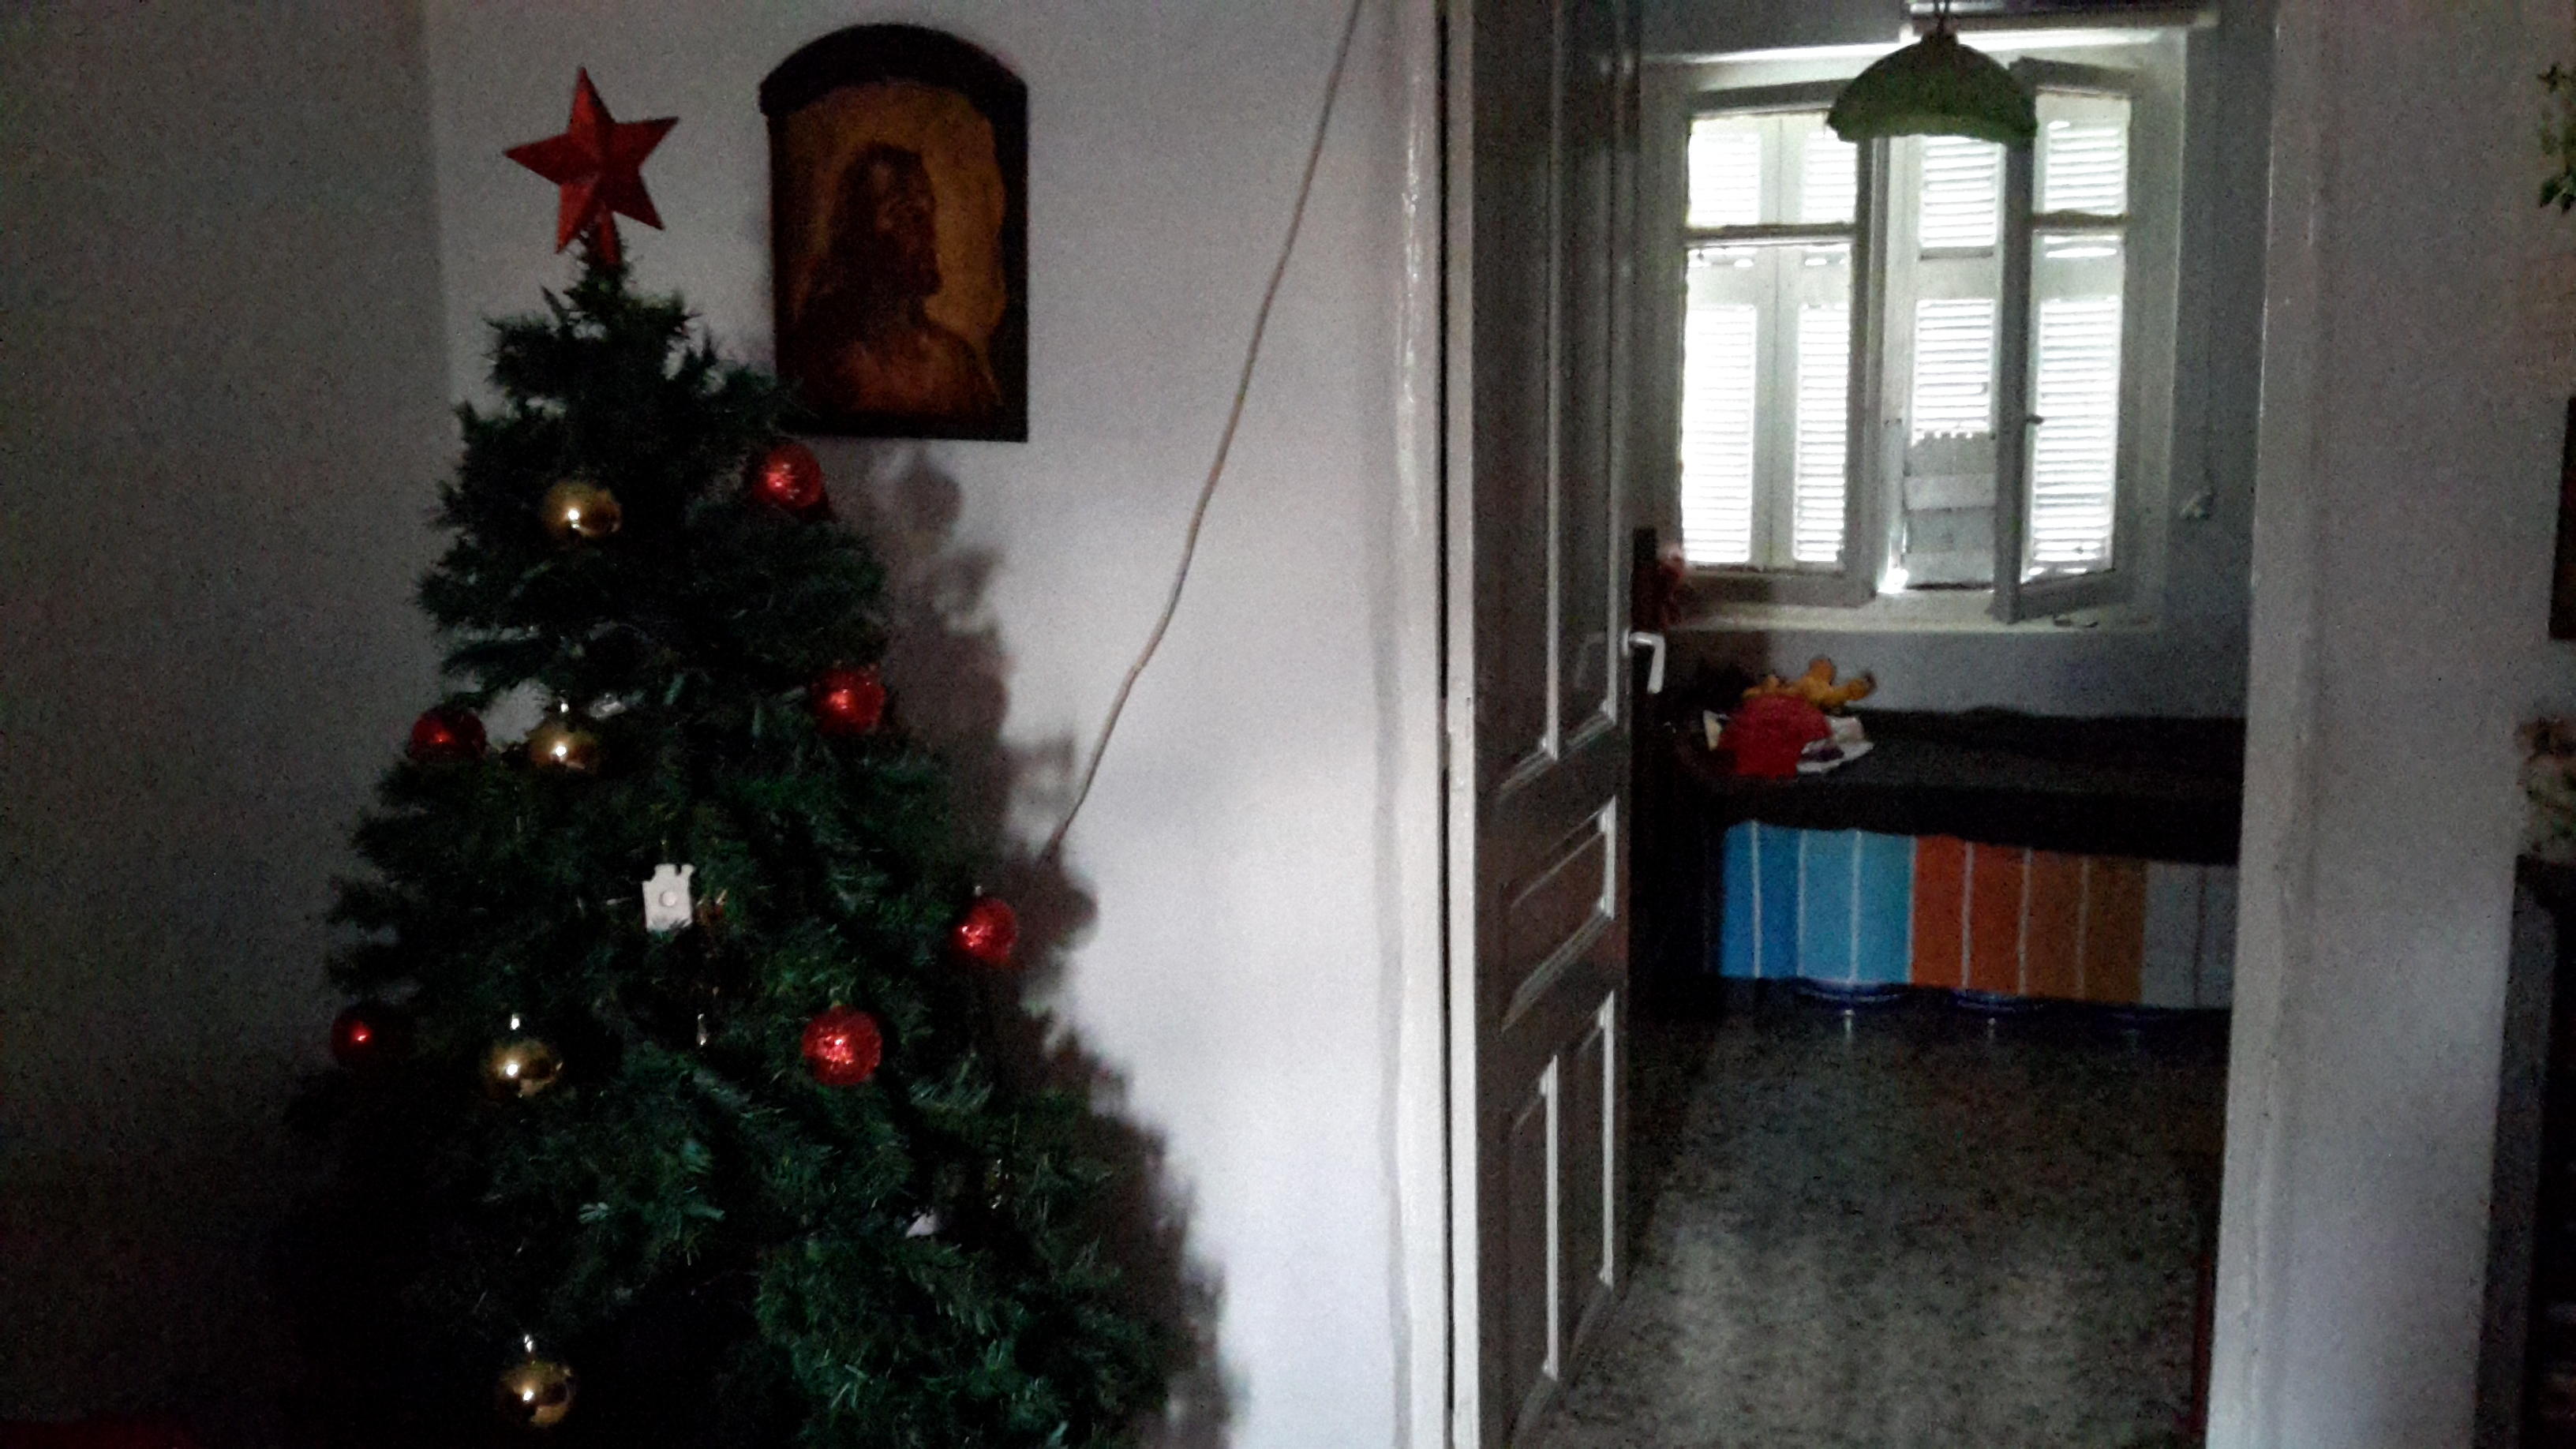 diaforetiko.gr : 20141227 145811 Έκκληση για βοήθεια σε άνεργη μητέρα με 3 παιδάκια που ζουν σε άθλιες συνθήκες